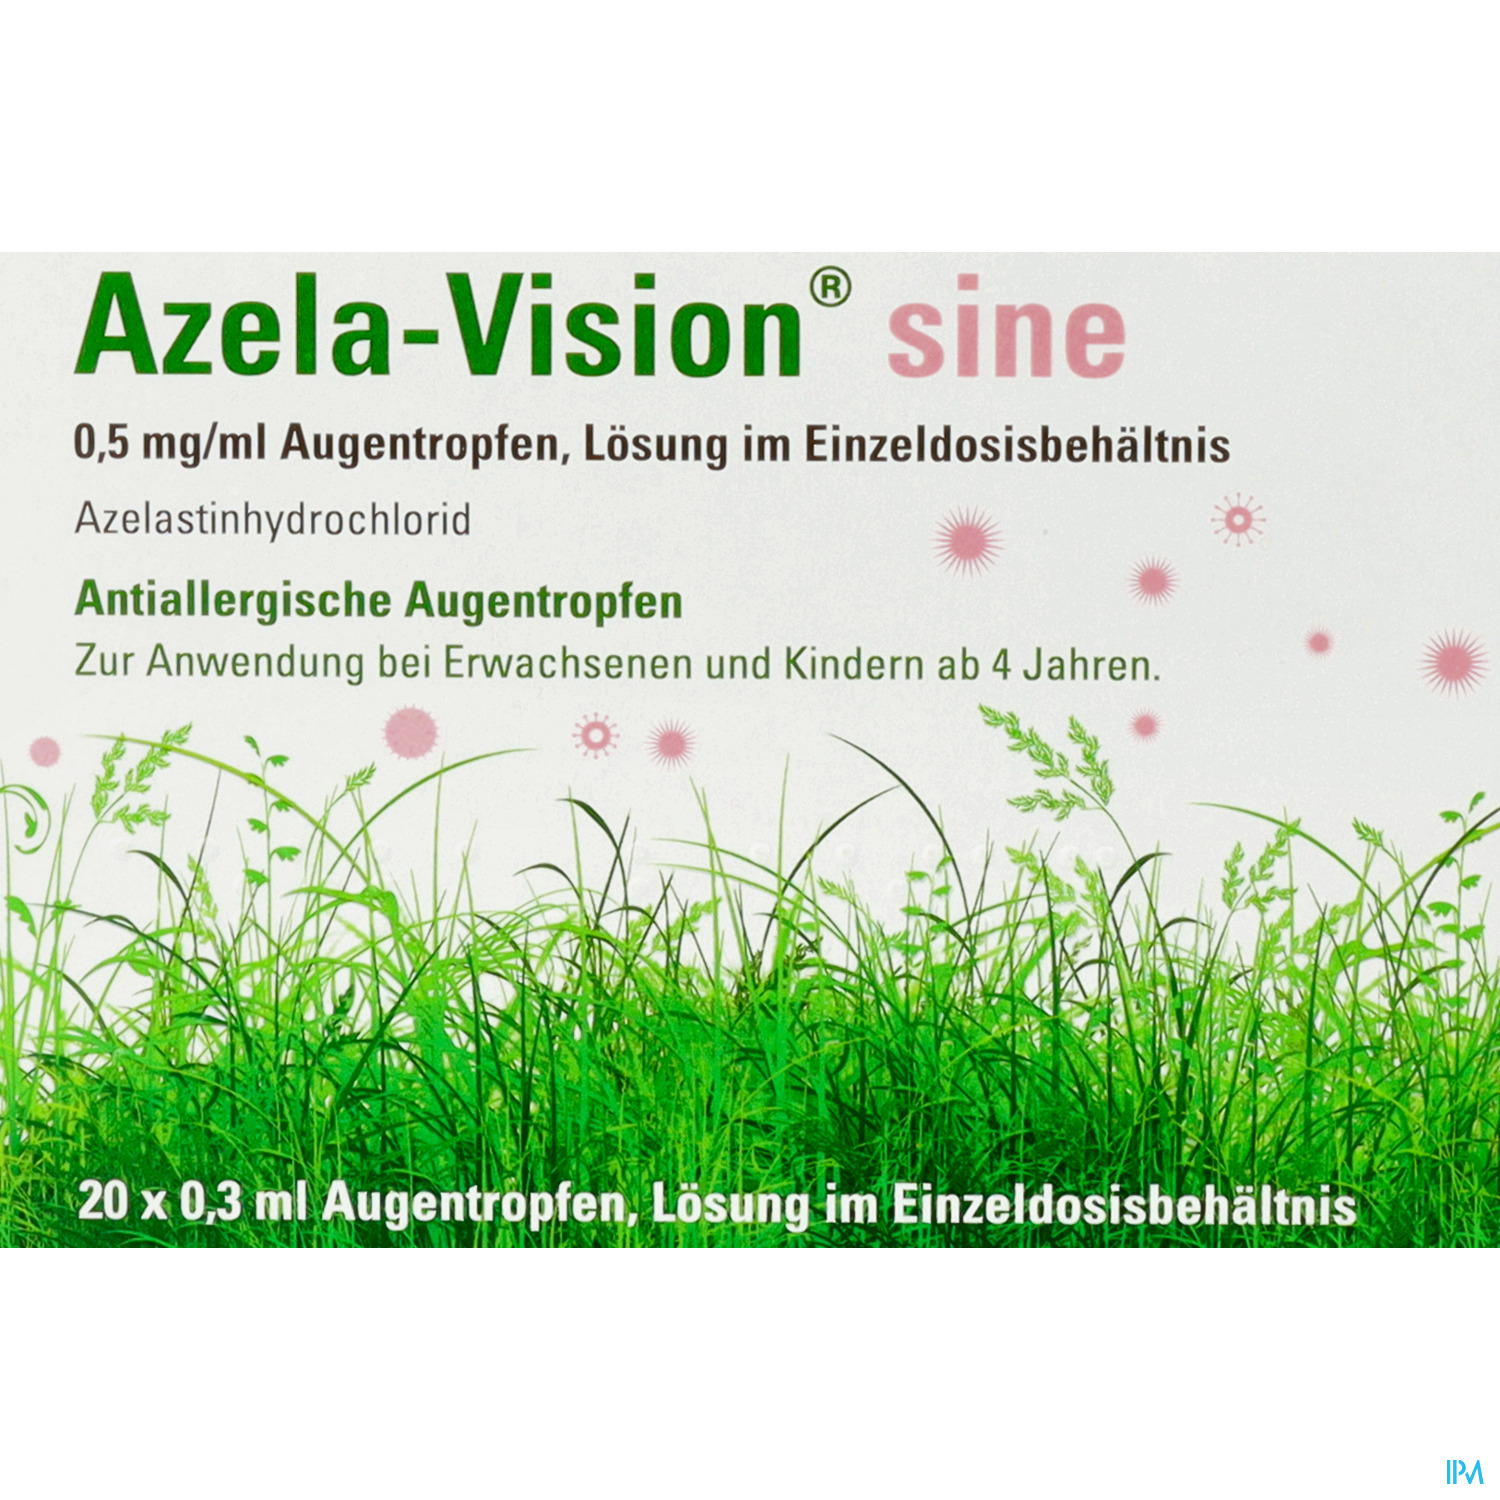 Azela-Vision sine 0,5 mg/ml Augentropfen, Lösung im Einzeldosisbehältnis